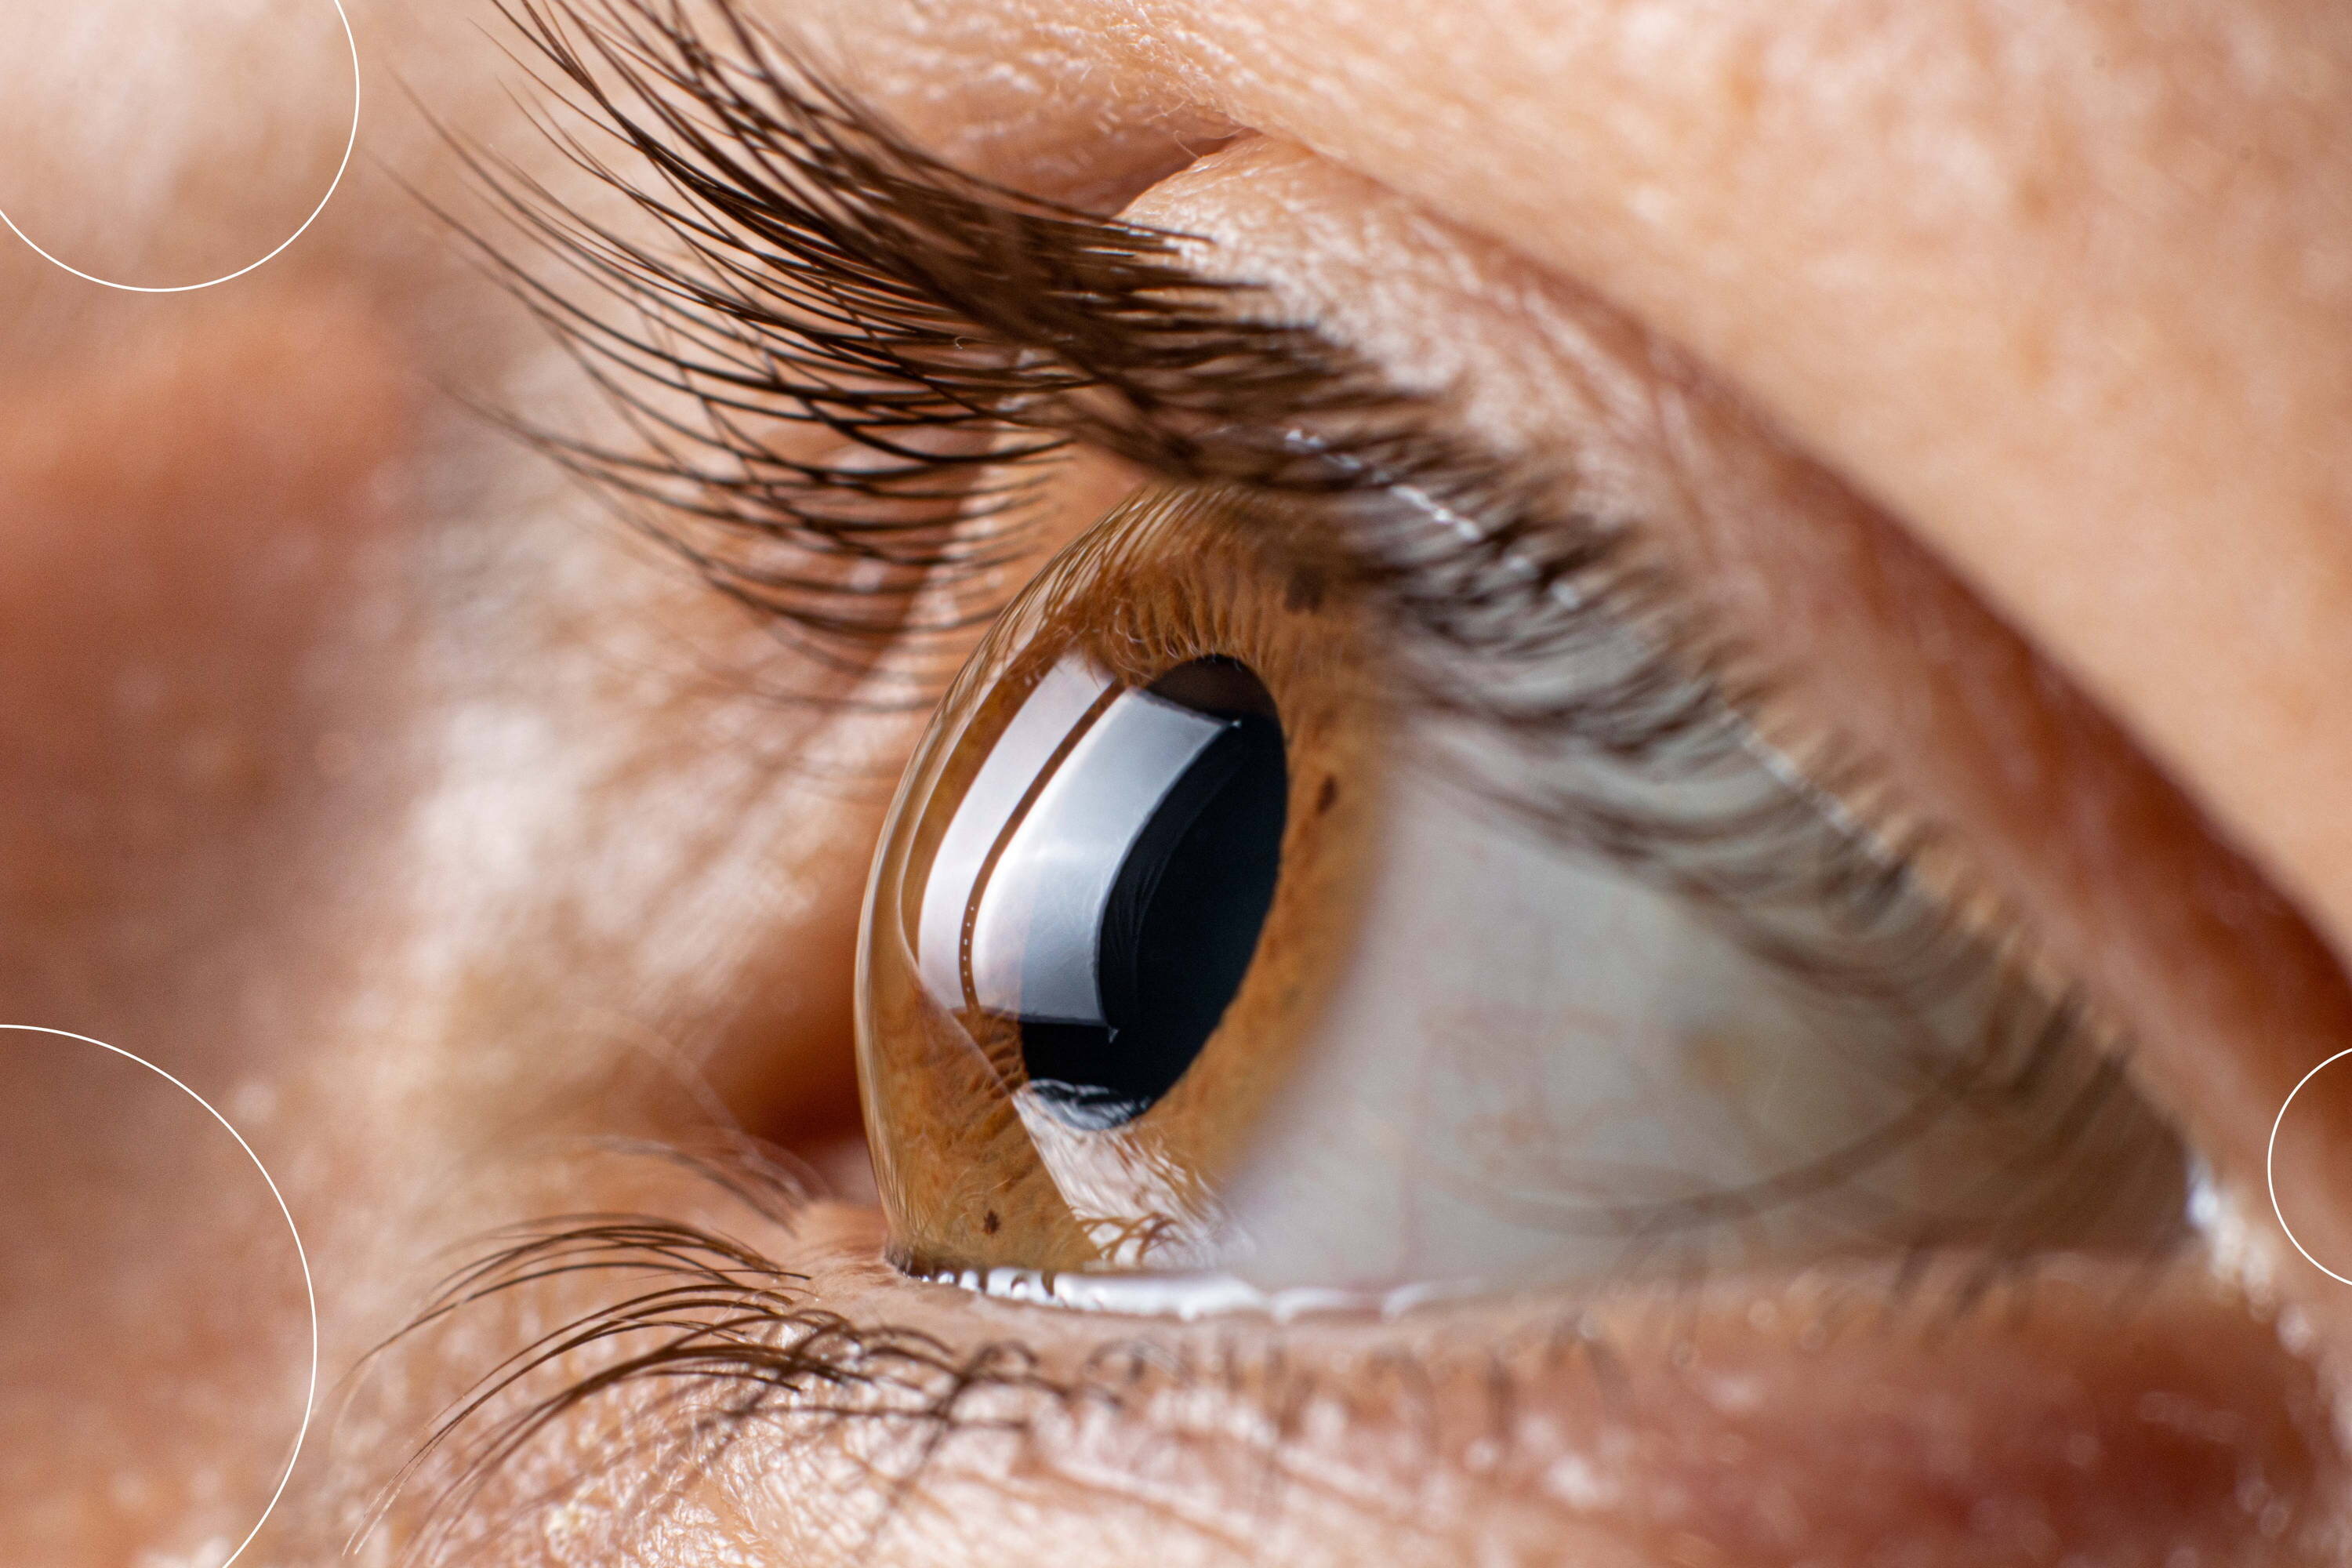 Foto del ojo de una persona. La idea es representar cómo se ve la córnea curvada de una persona que padece astigmatismo